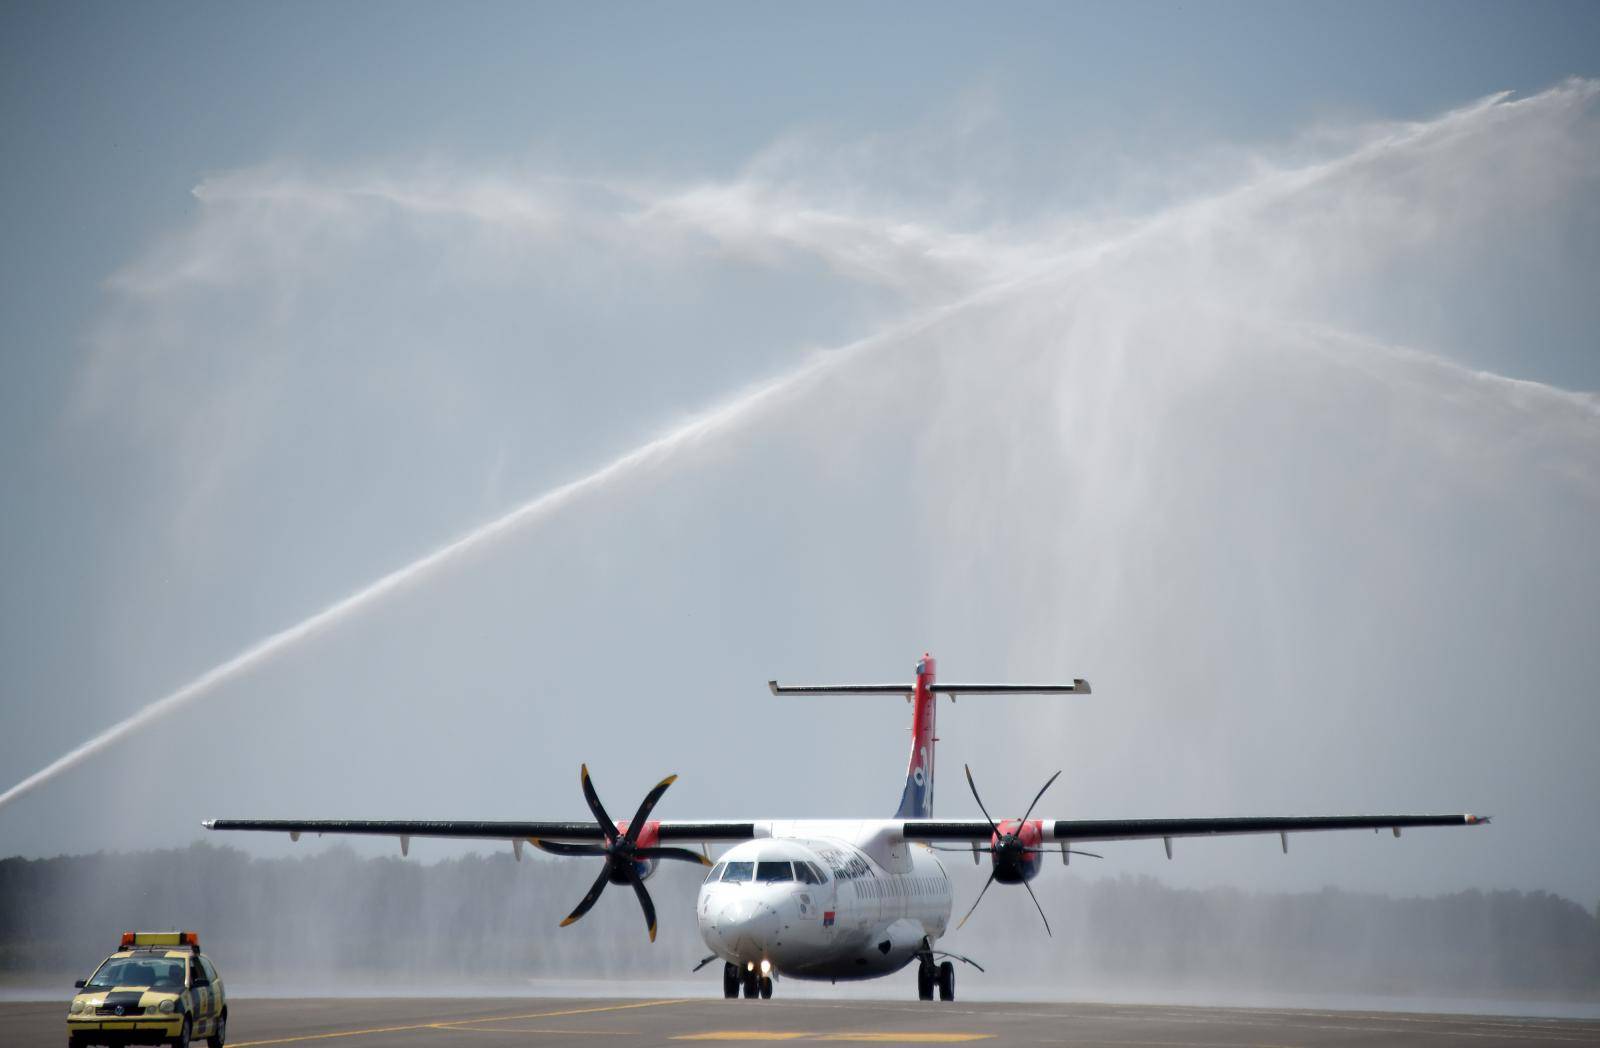 Po prvi puta ove godine u pulsku Zračnu luku sletjela i avio kompanija Air Serbia